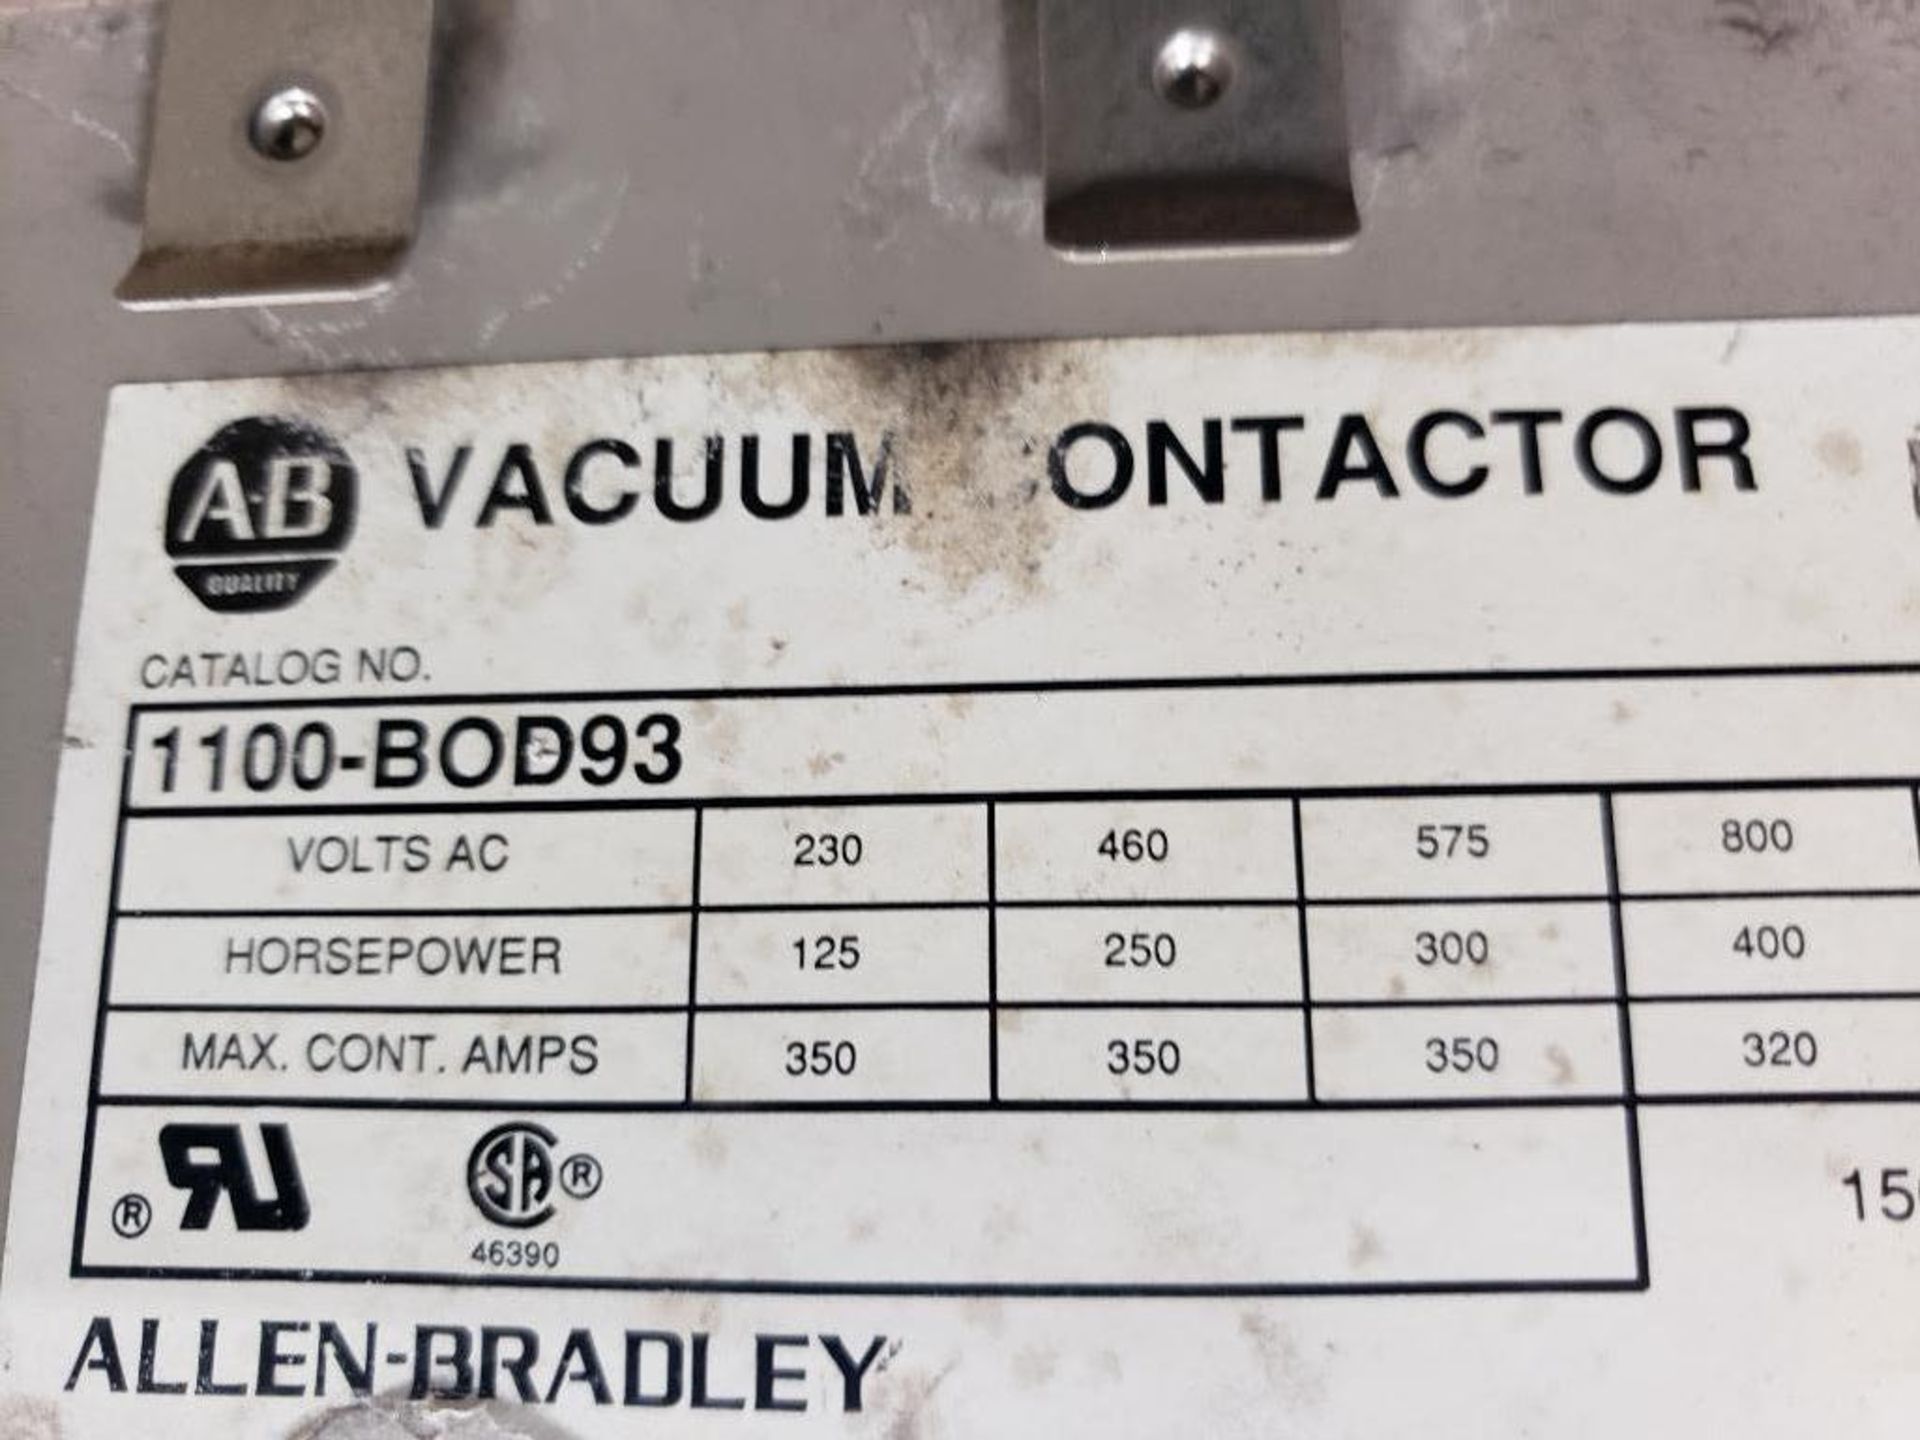 Allen Bradley vacuum contactor 1100-BOD93. - Image 5 of 6